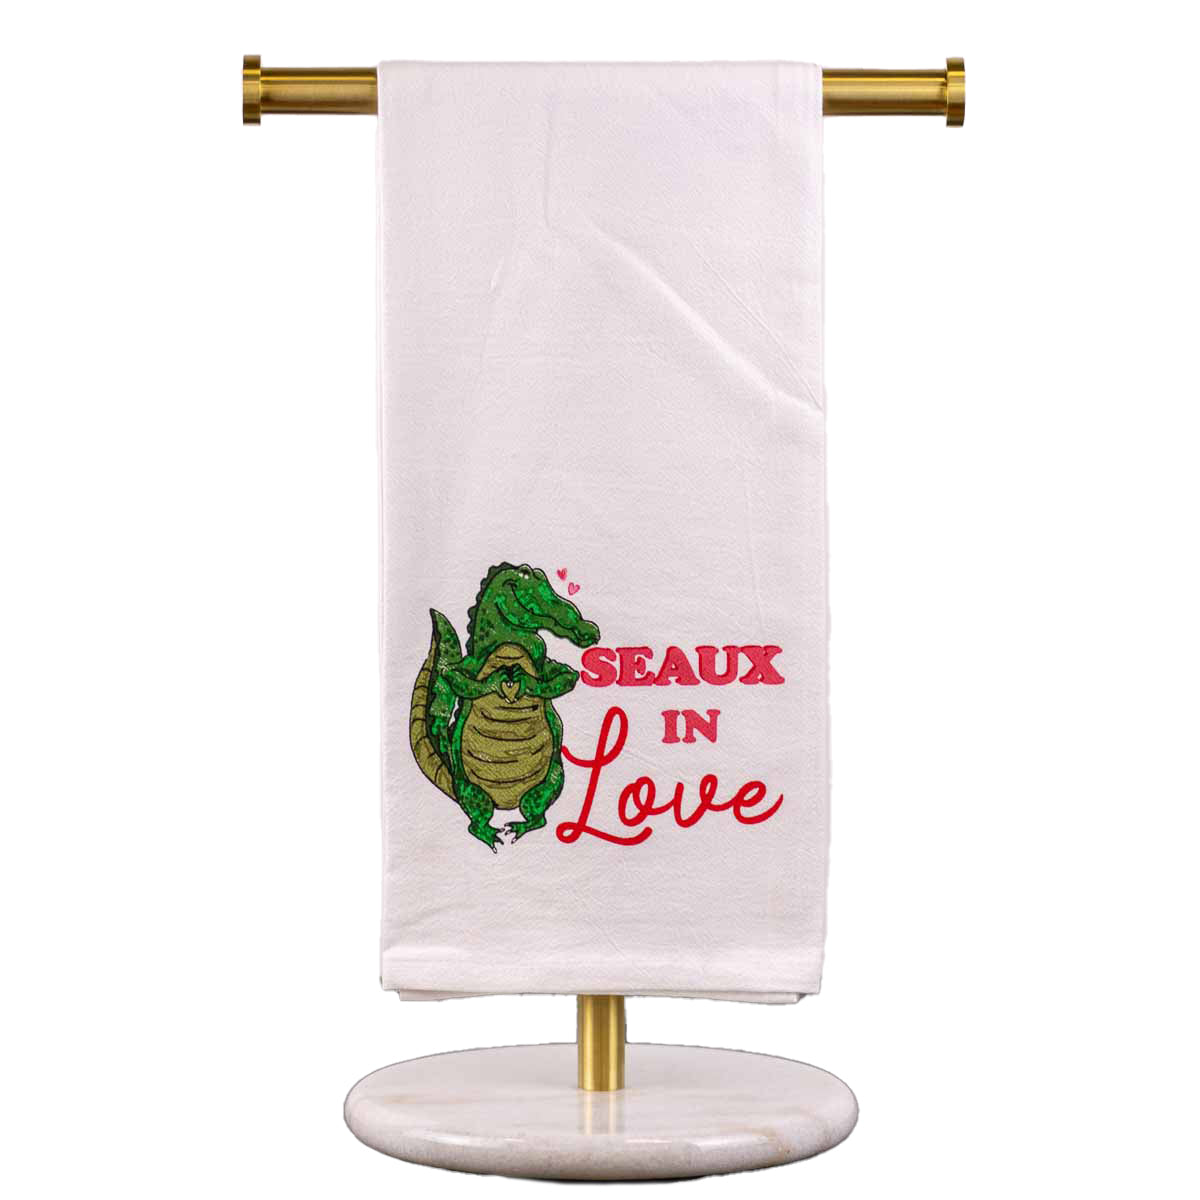 Seaux In Love Hand Towel